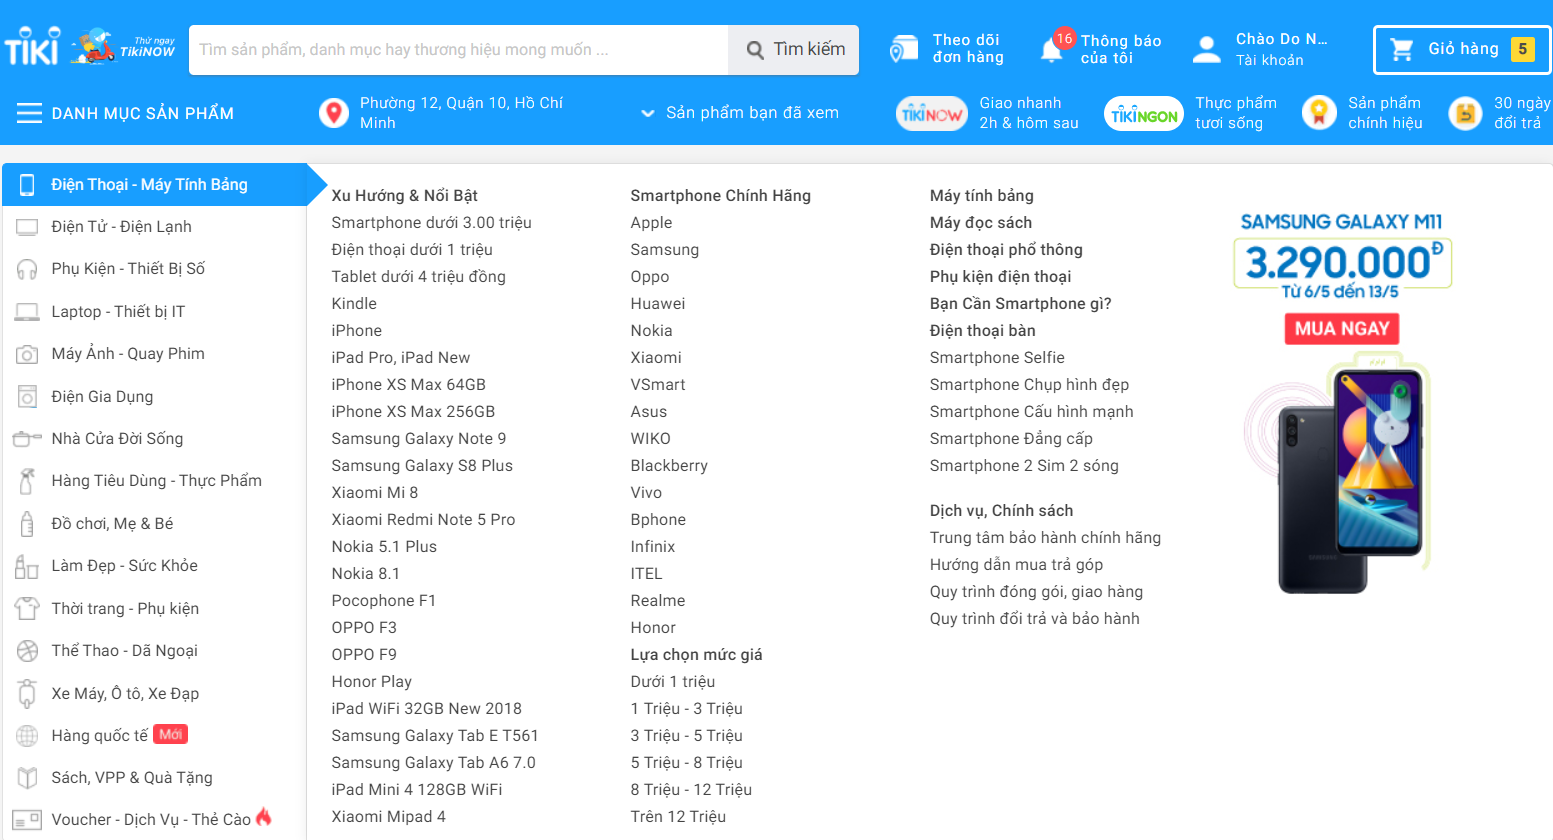 Các thể loại menu của website iTop và cách sử dụng